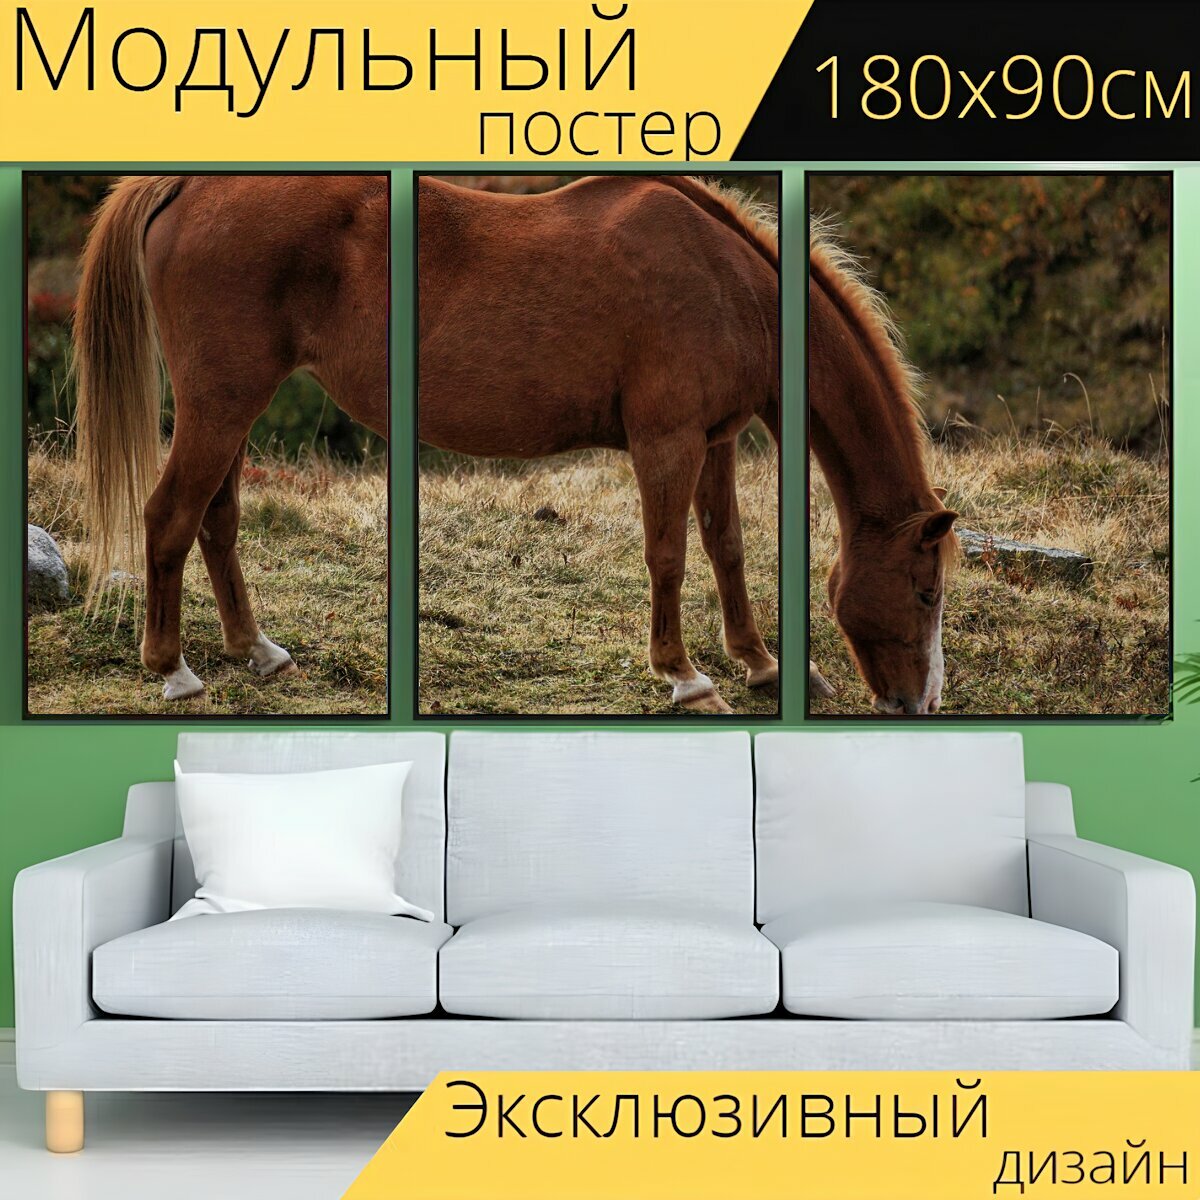 Модульный постер "Лошадь, коричневый, коричневая лошадь" 180 x 90 см. для интерьера